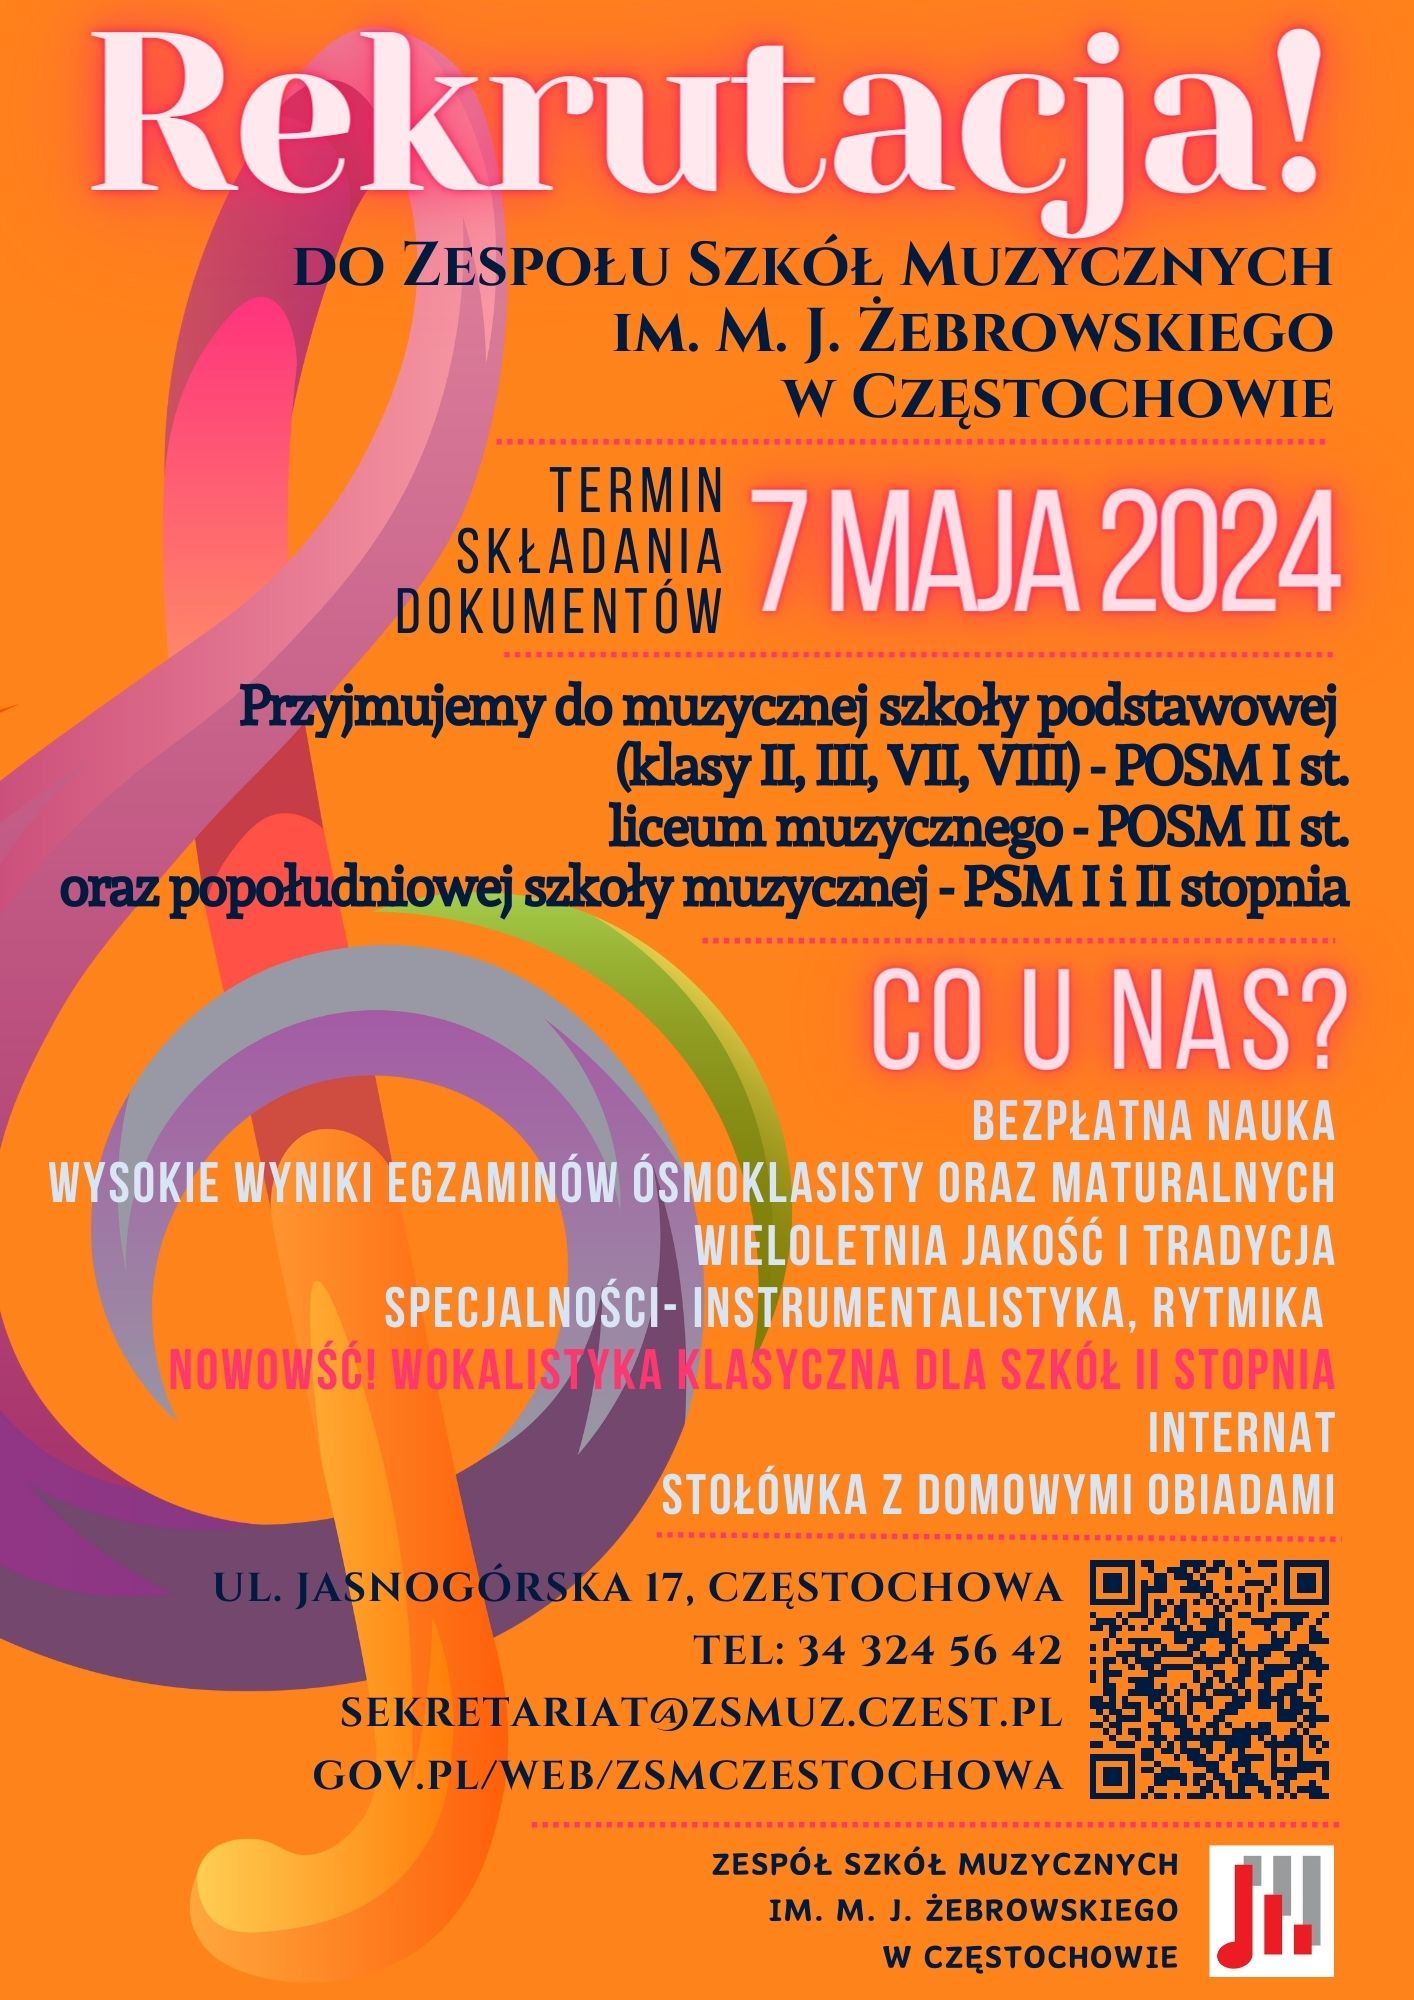 Pomarańczowe tło, po lewej kolorowy klucz wiolinowy, tekst informacja o rekrutacji do ZSM.